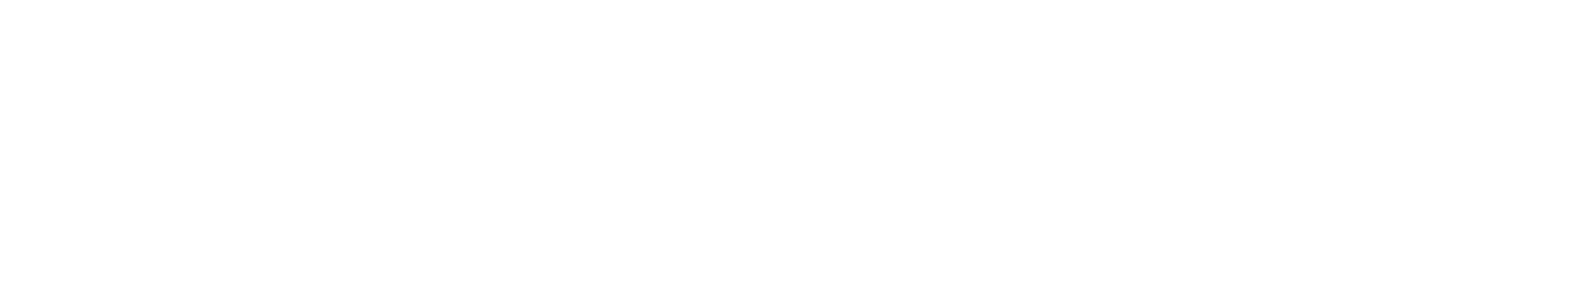 Veritone logo large for dark backgrounds (transparent PNG)